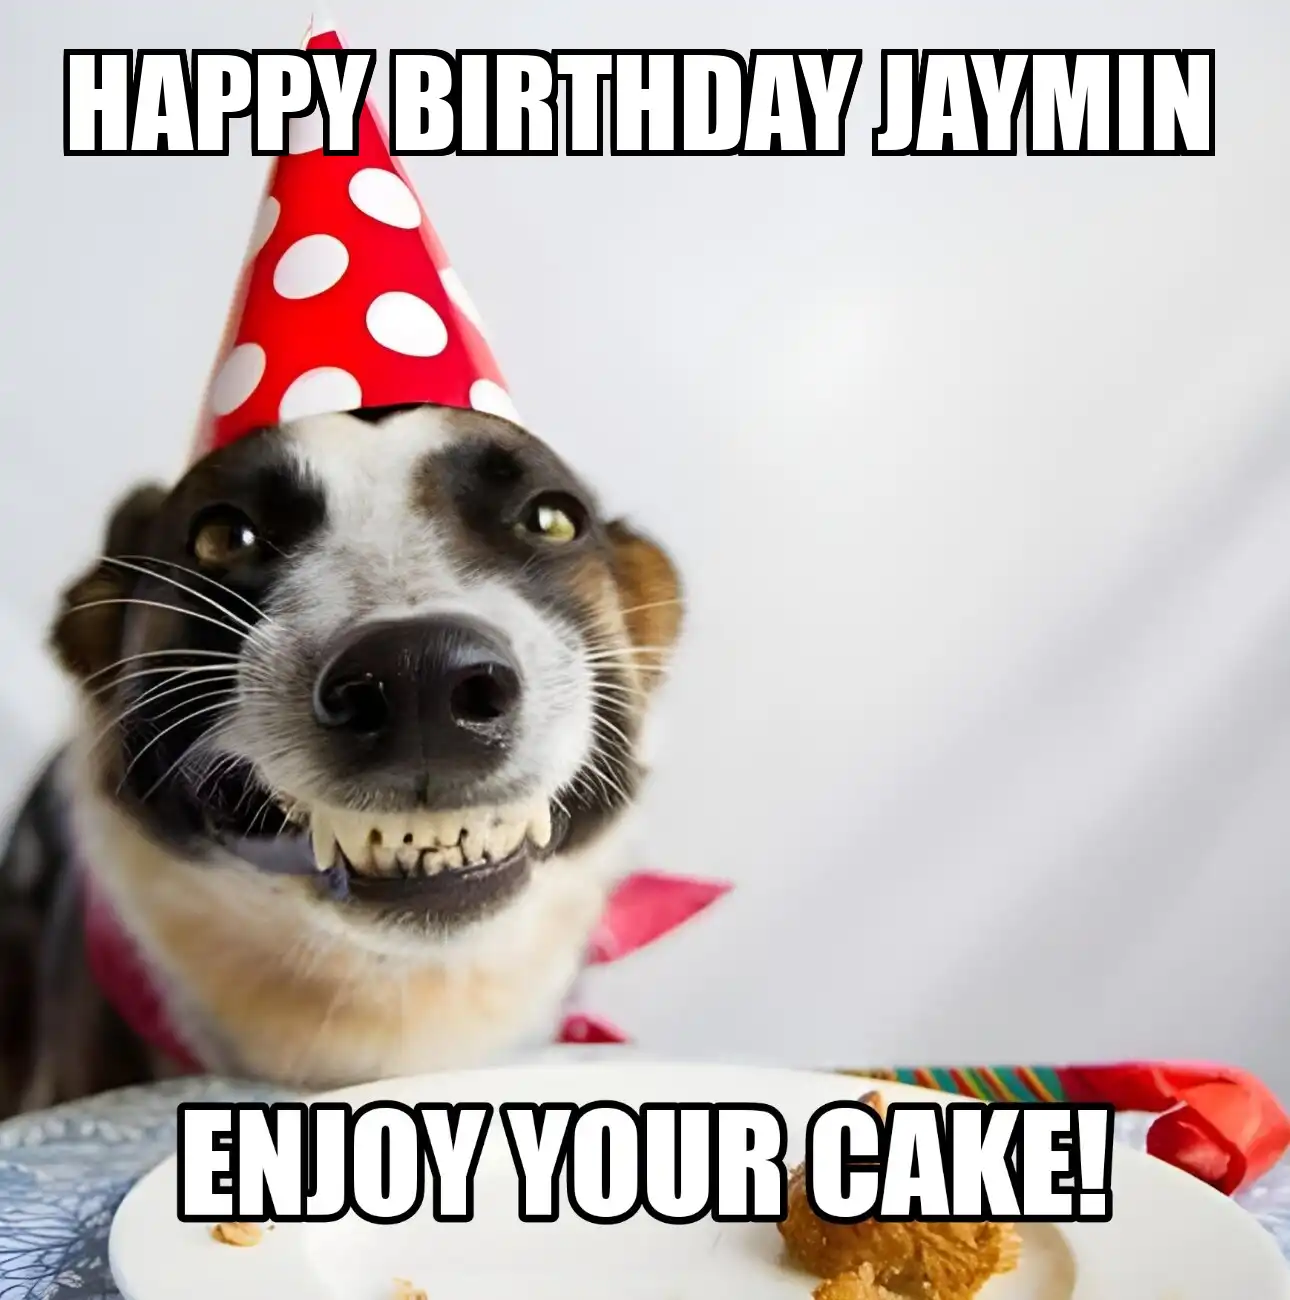 Happy Birthday Jaymin Enjoy Your Cake Dog Meme